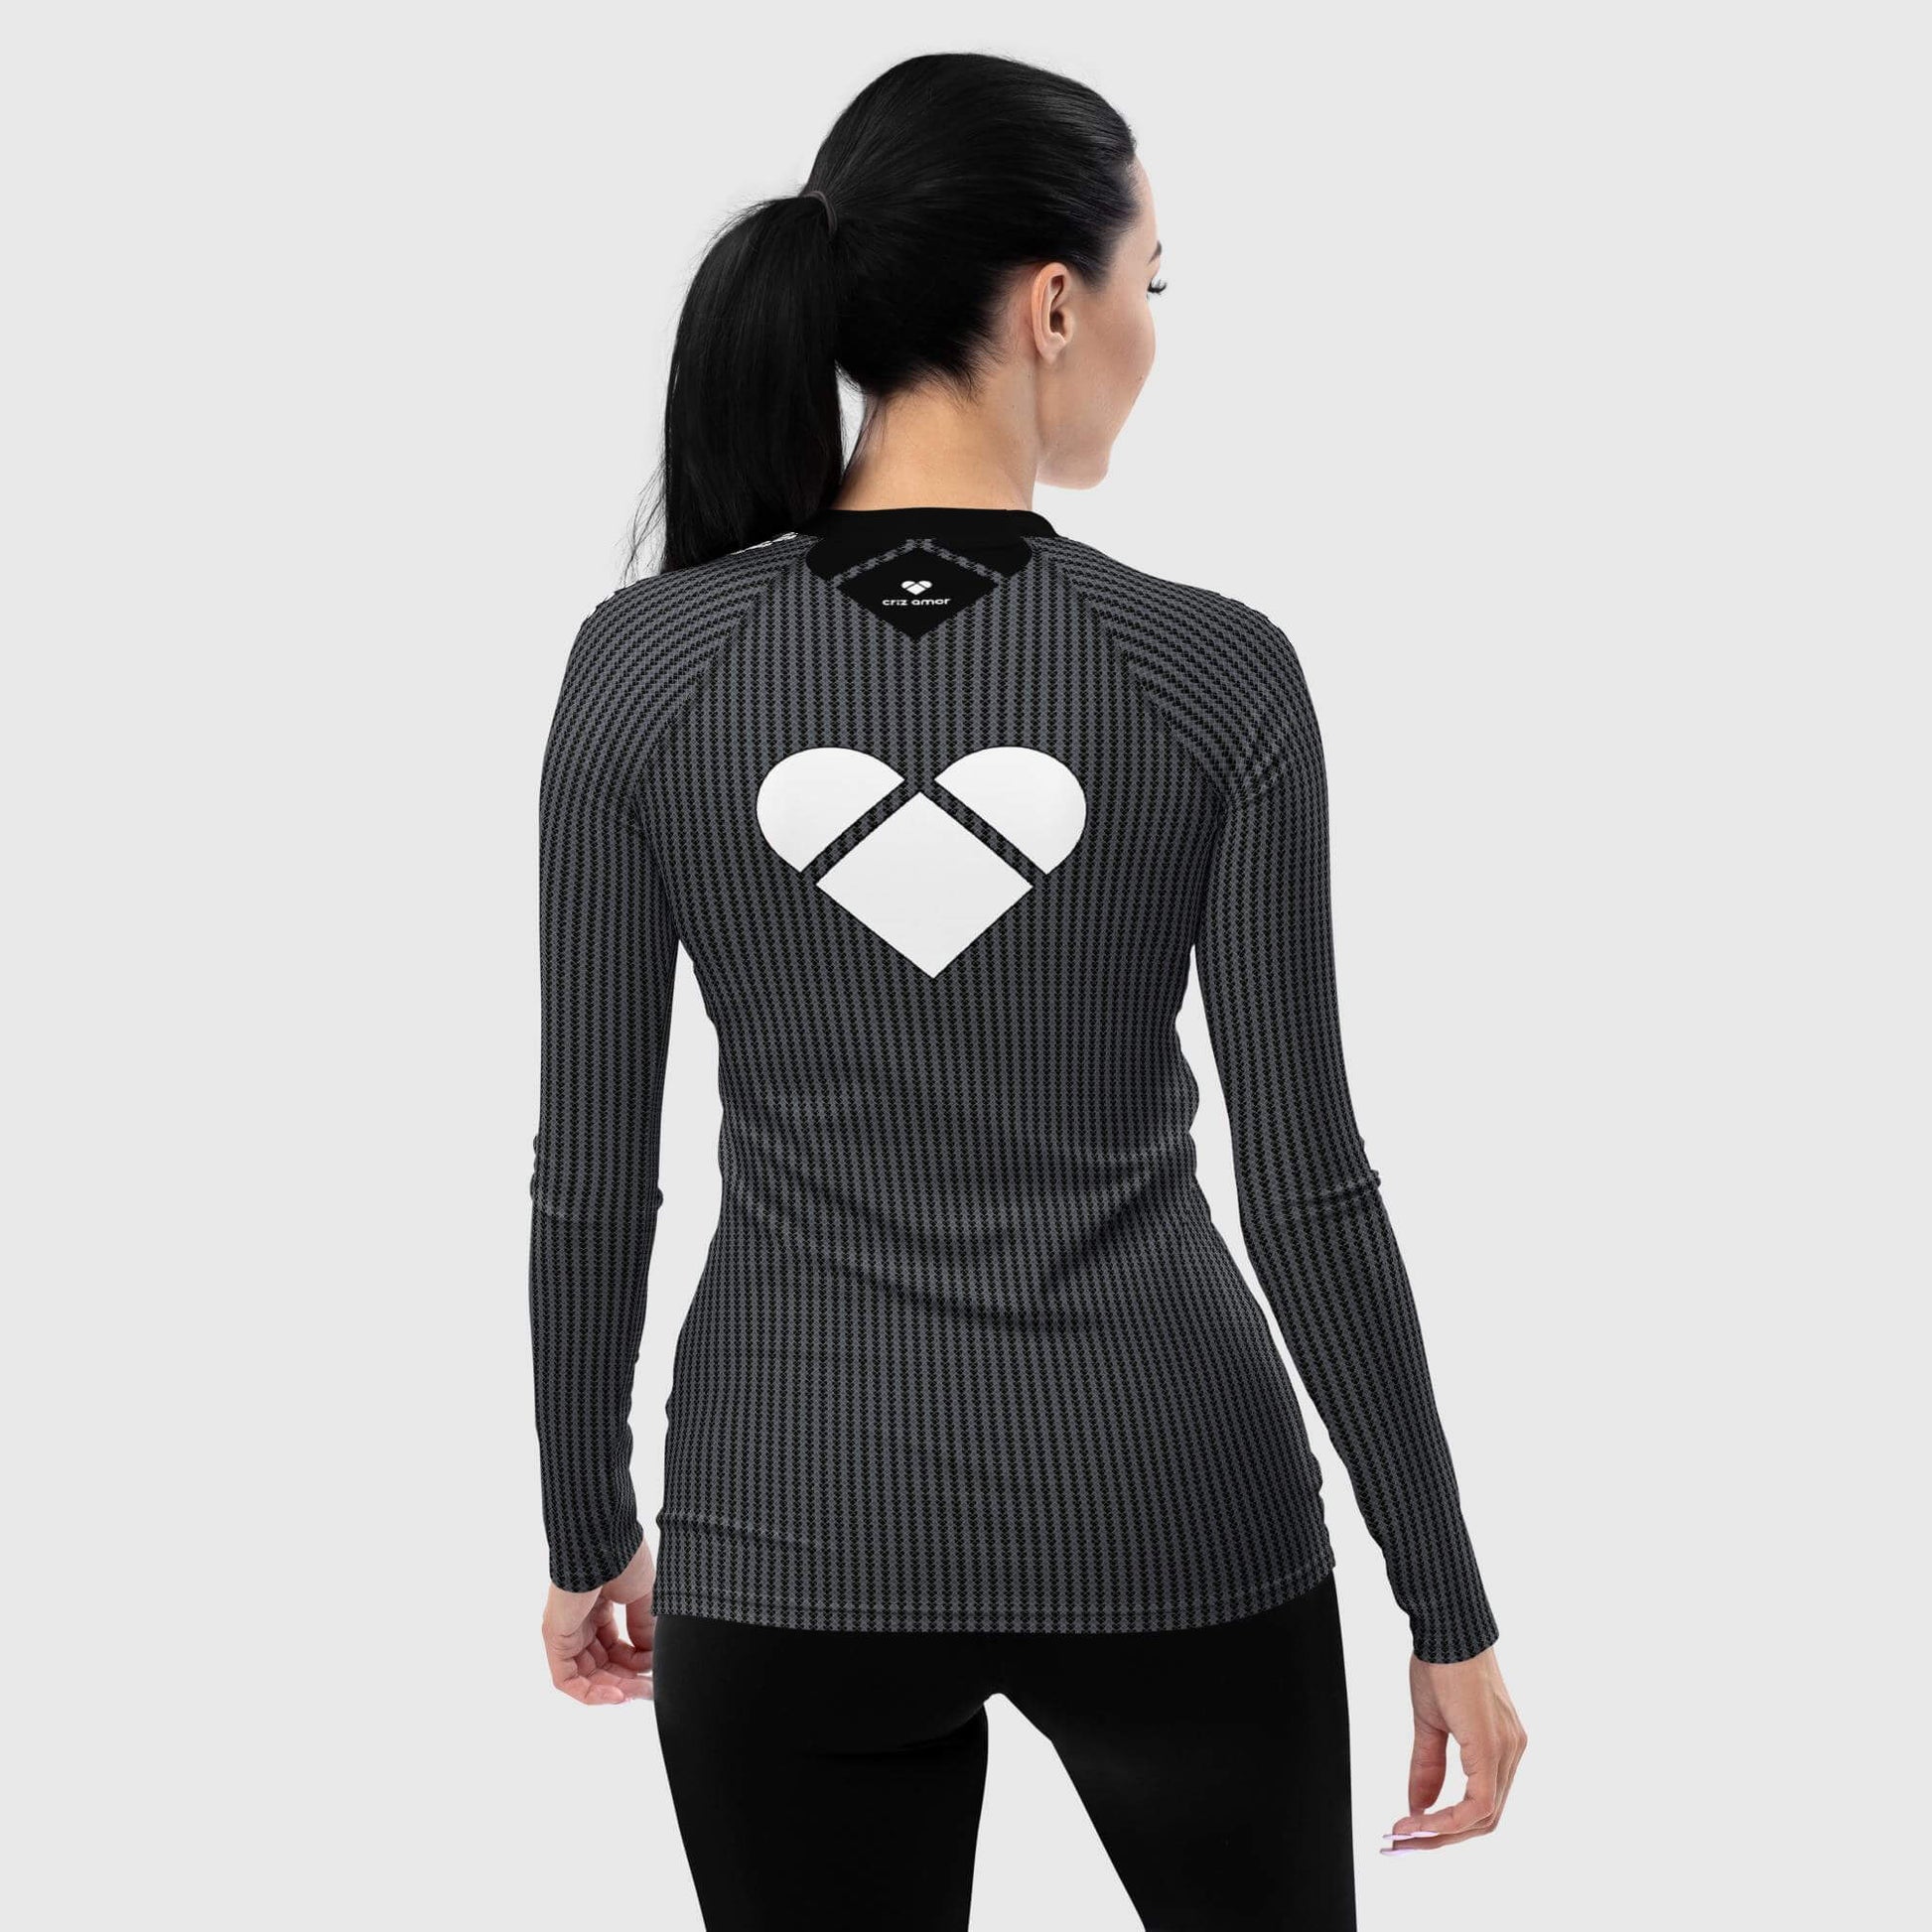 CRiZ AMOR's Designer Black Lovogram Rash Guard for women, big heart logo white